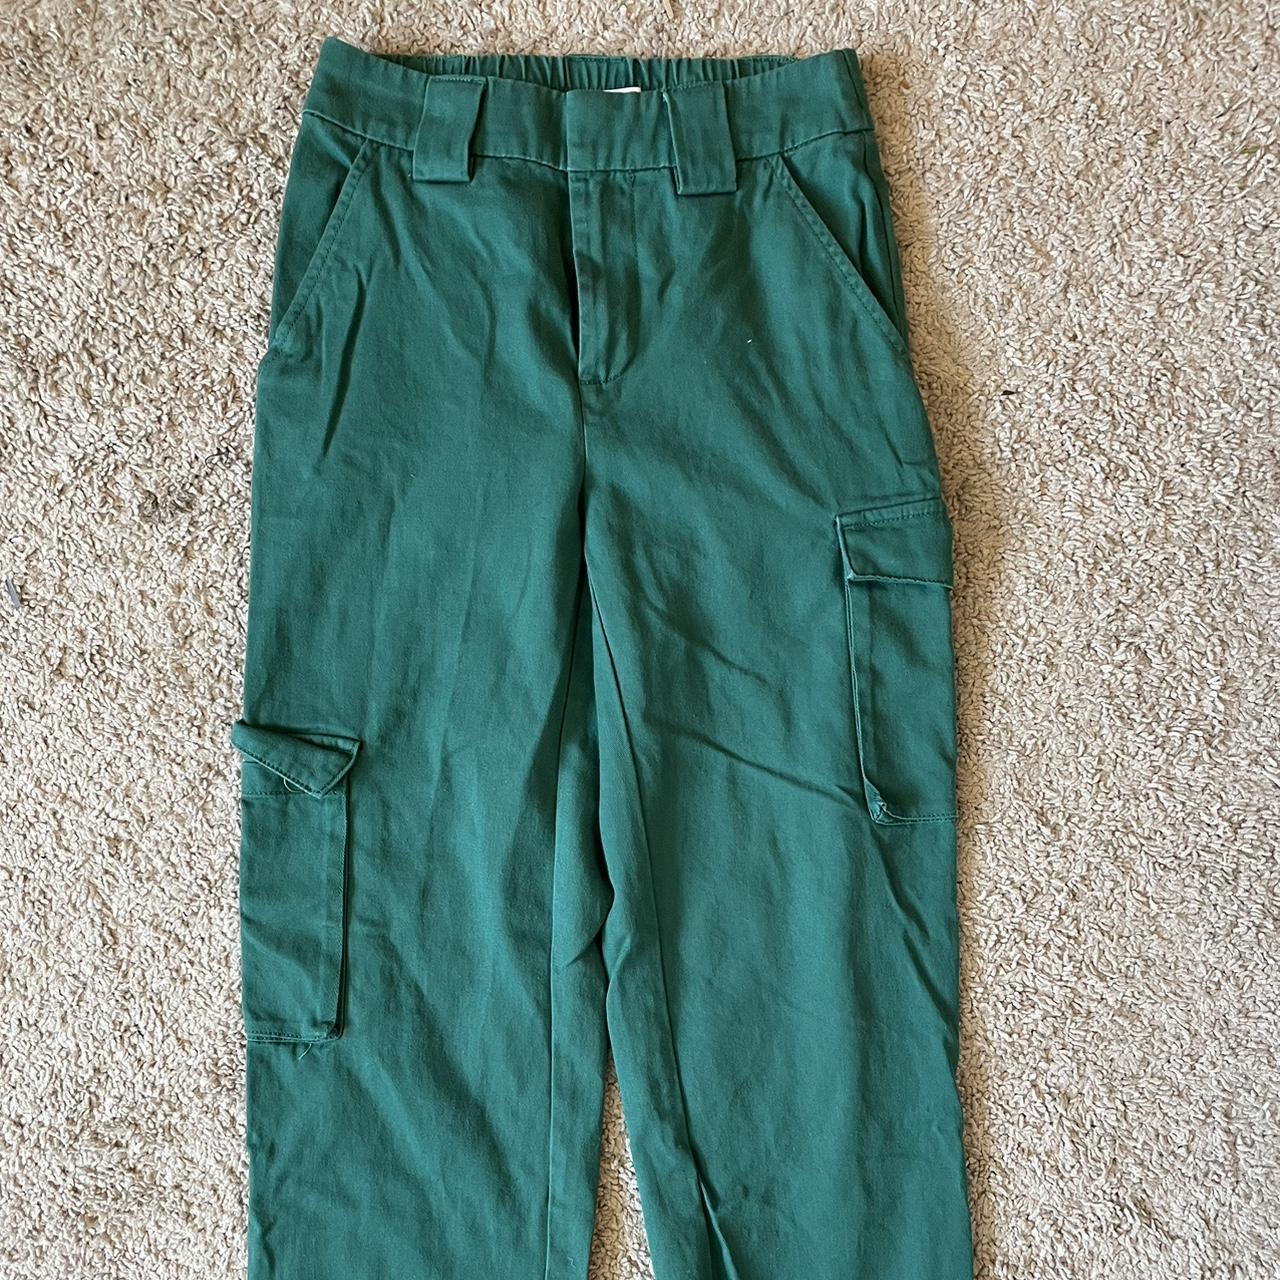 Green cargo pants - Depop